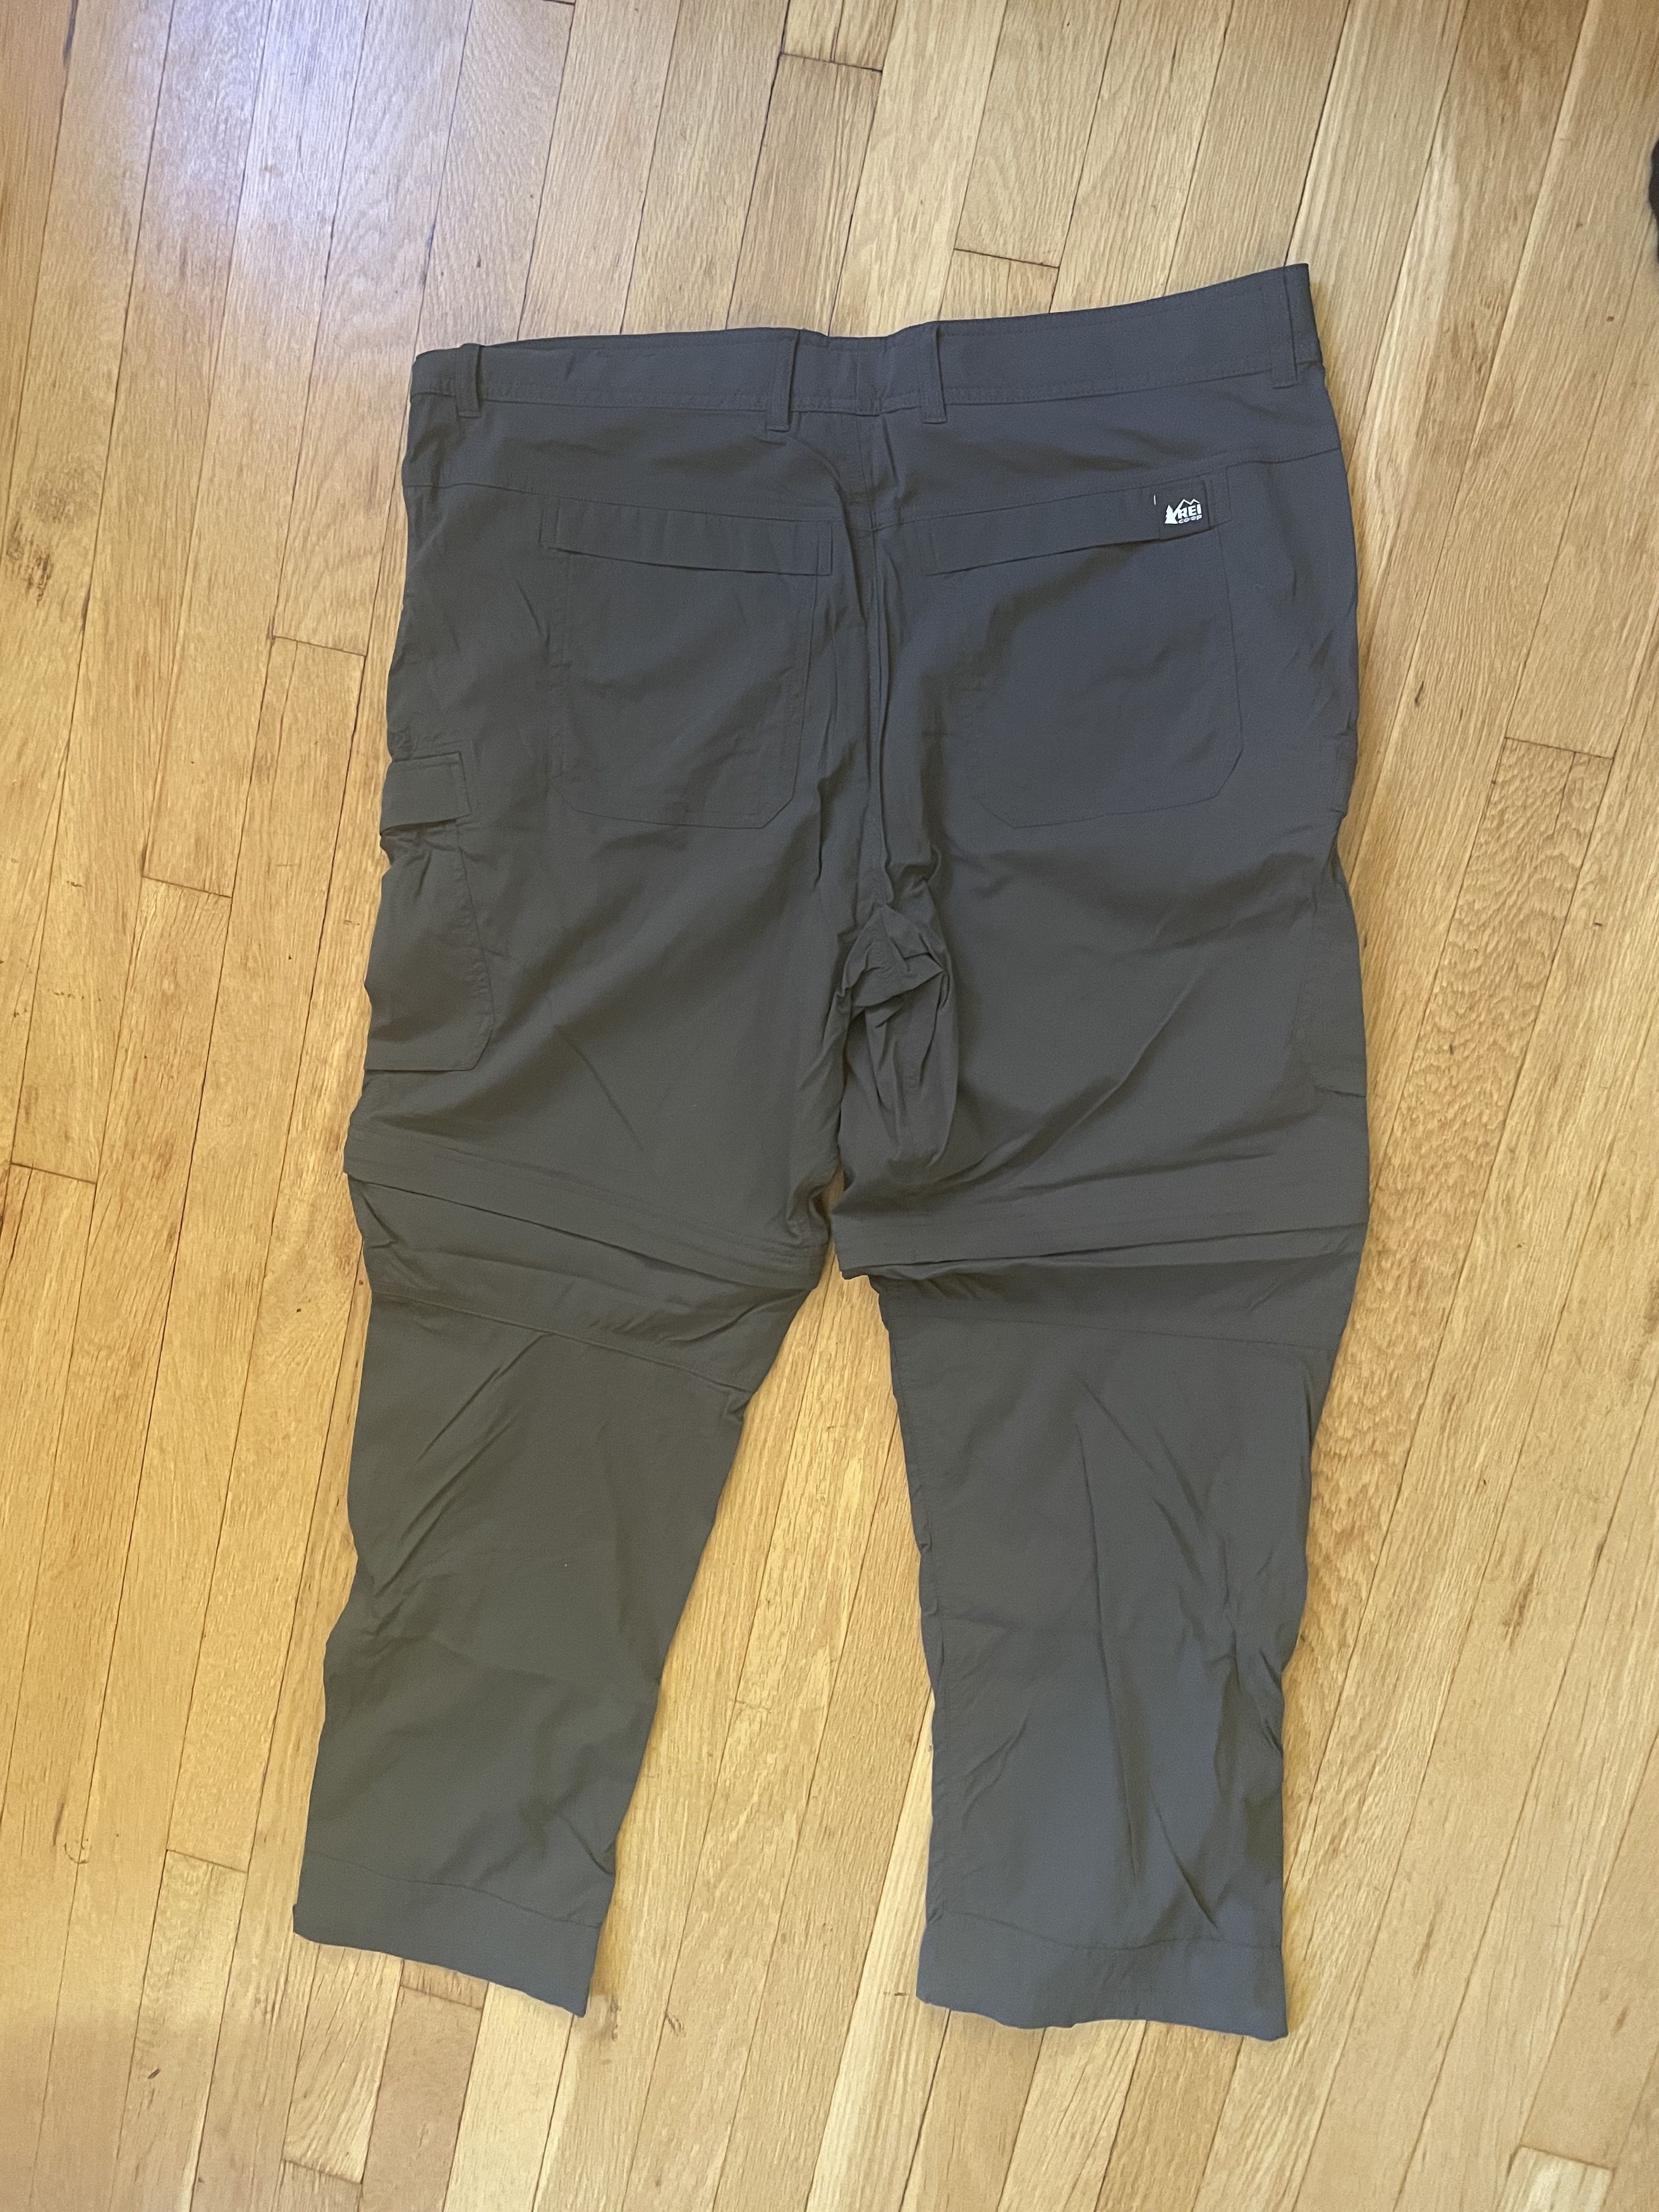 Rei REI Cargo Pants Size US 38 / EU 54 - 5 Thumbnail